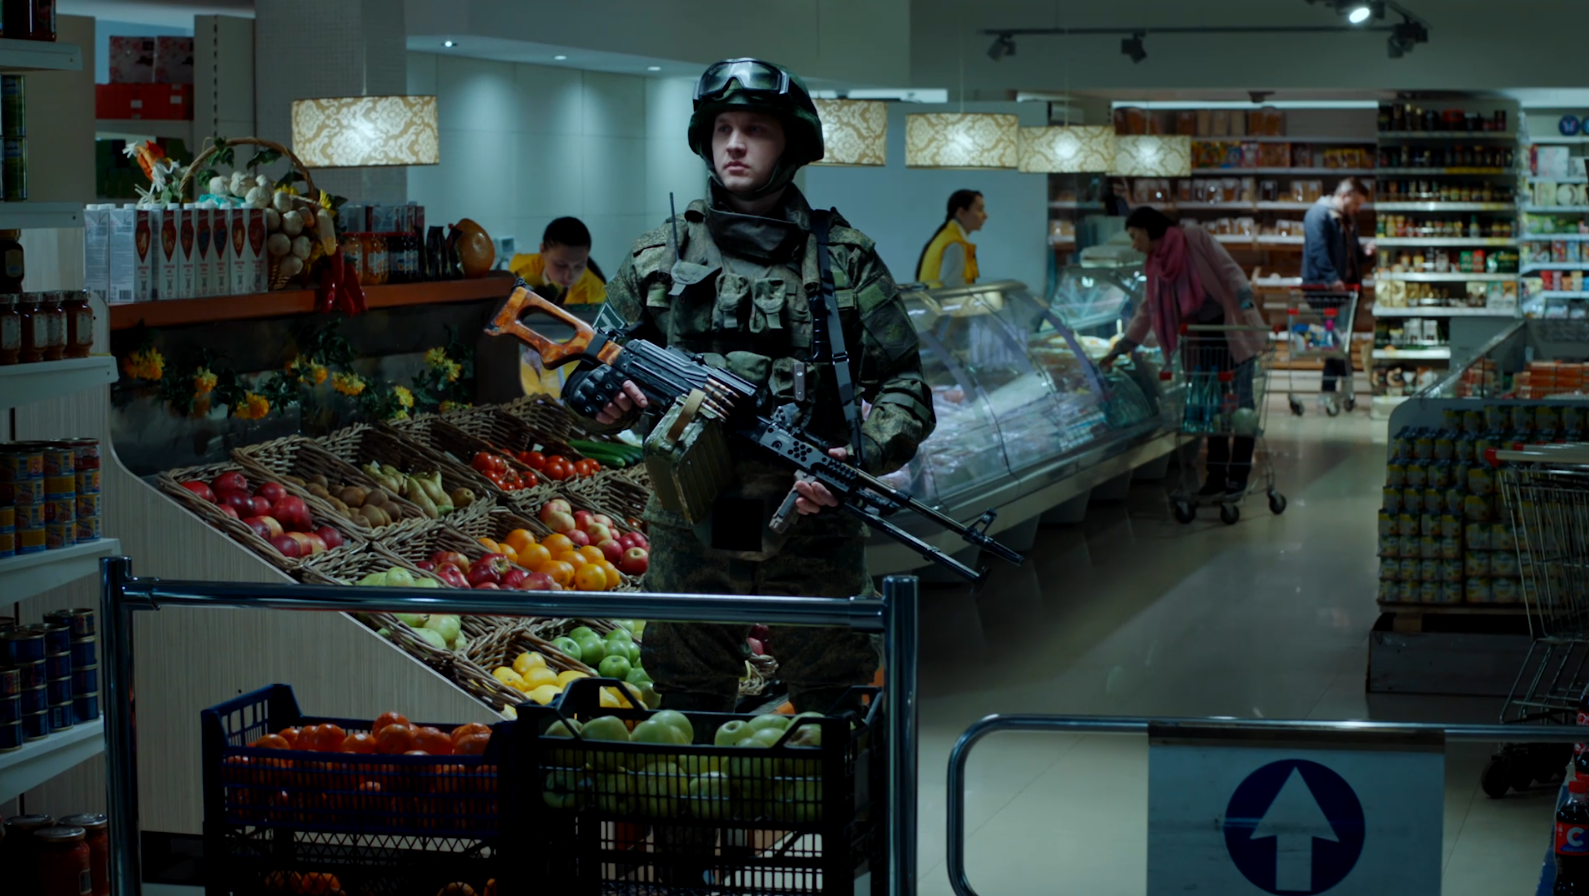 Реклама армии. Охрана супермаркета. Реклама армии России. Армейская реклама